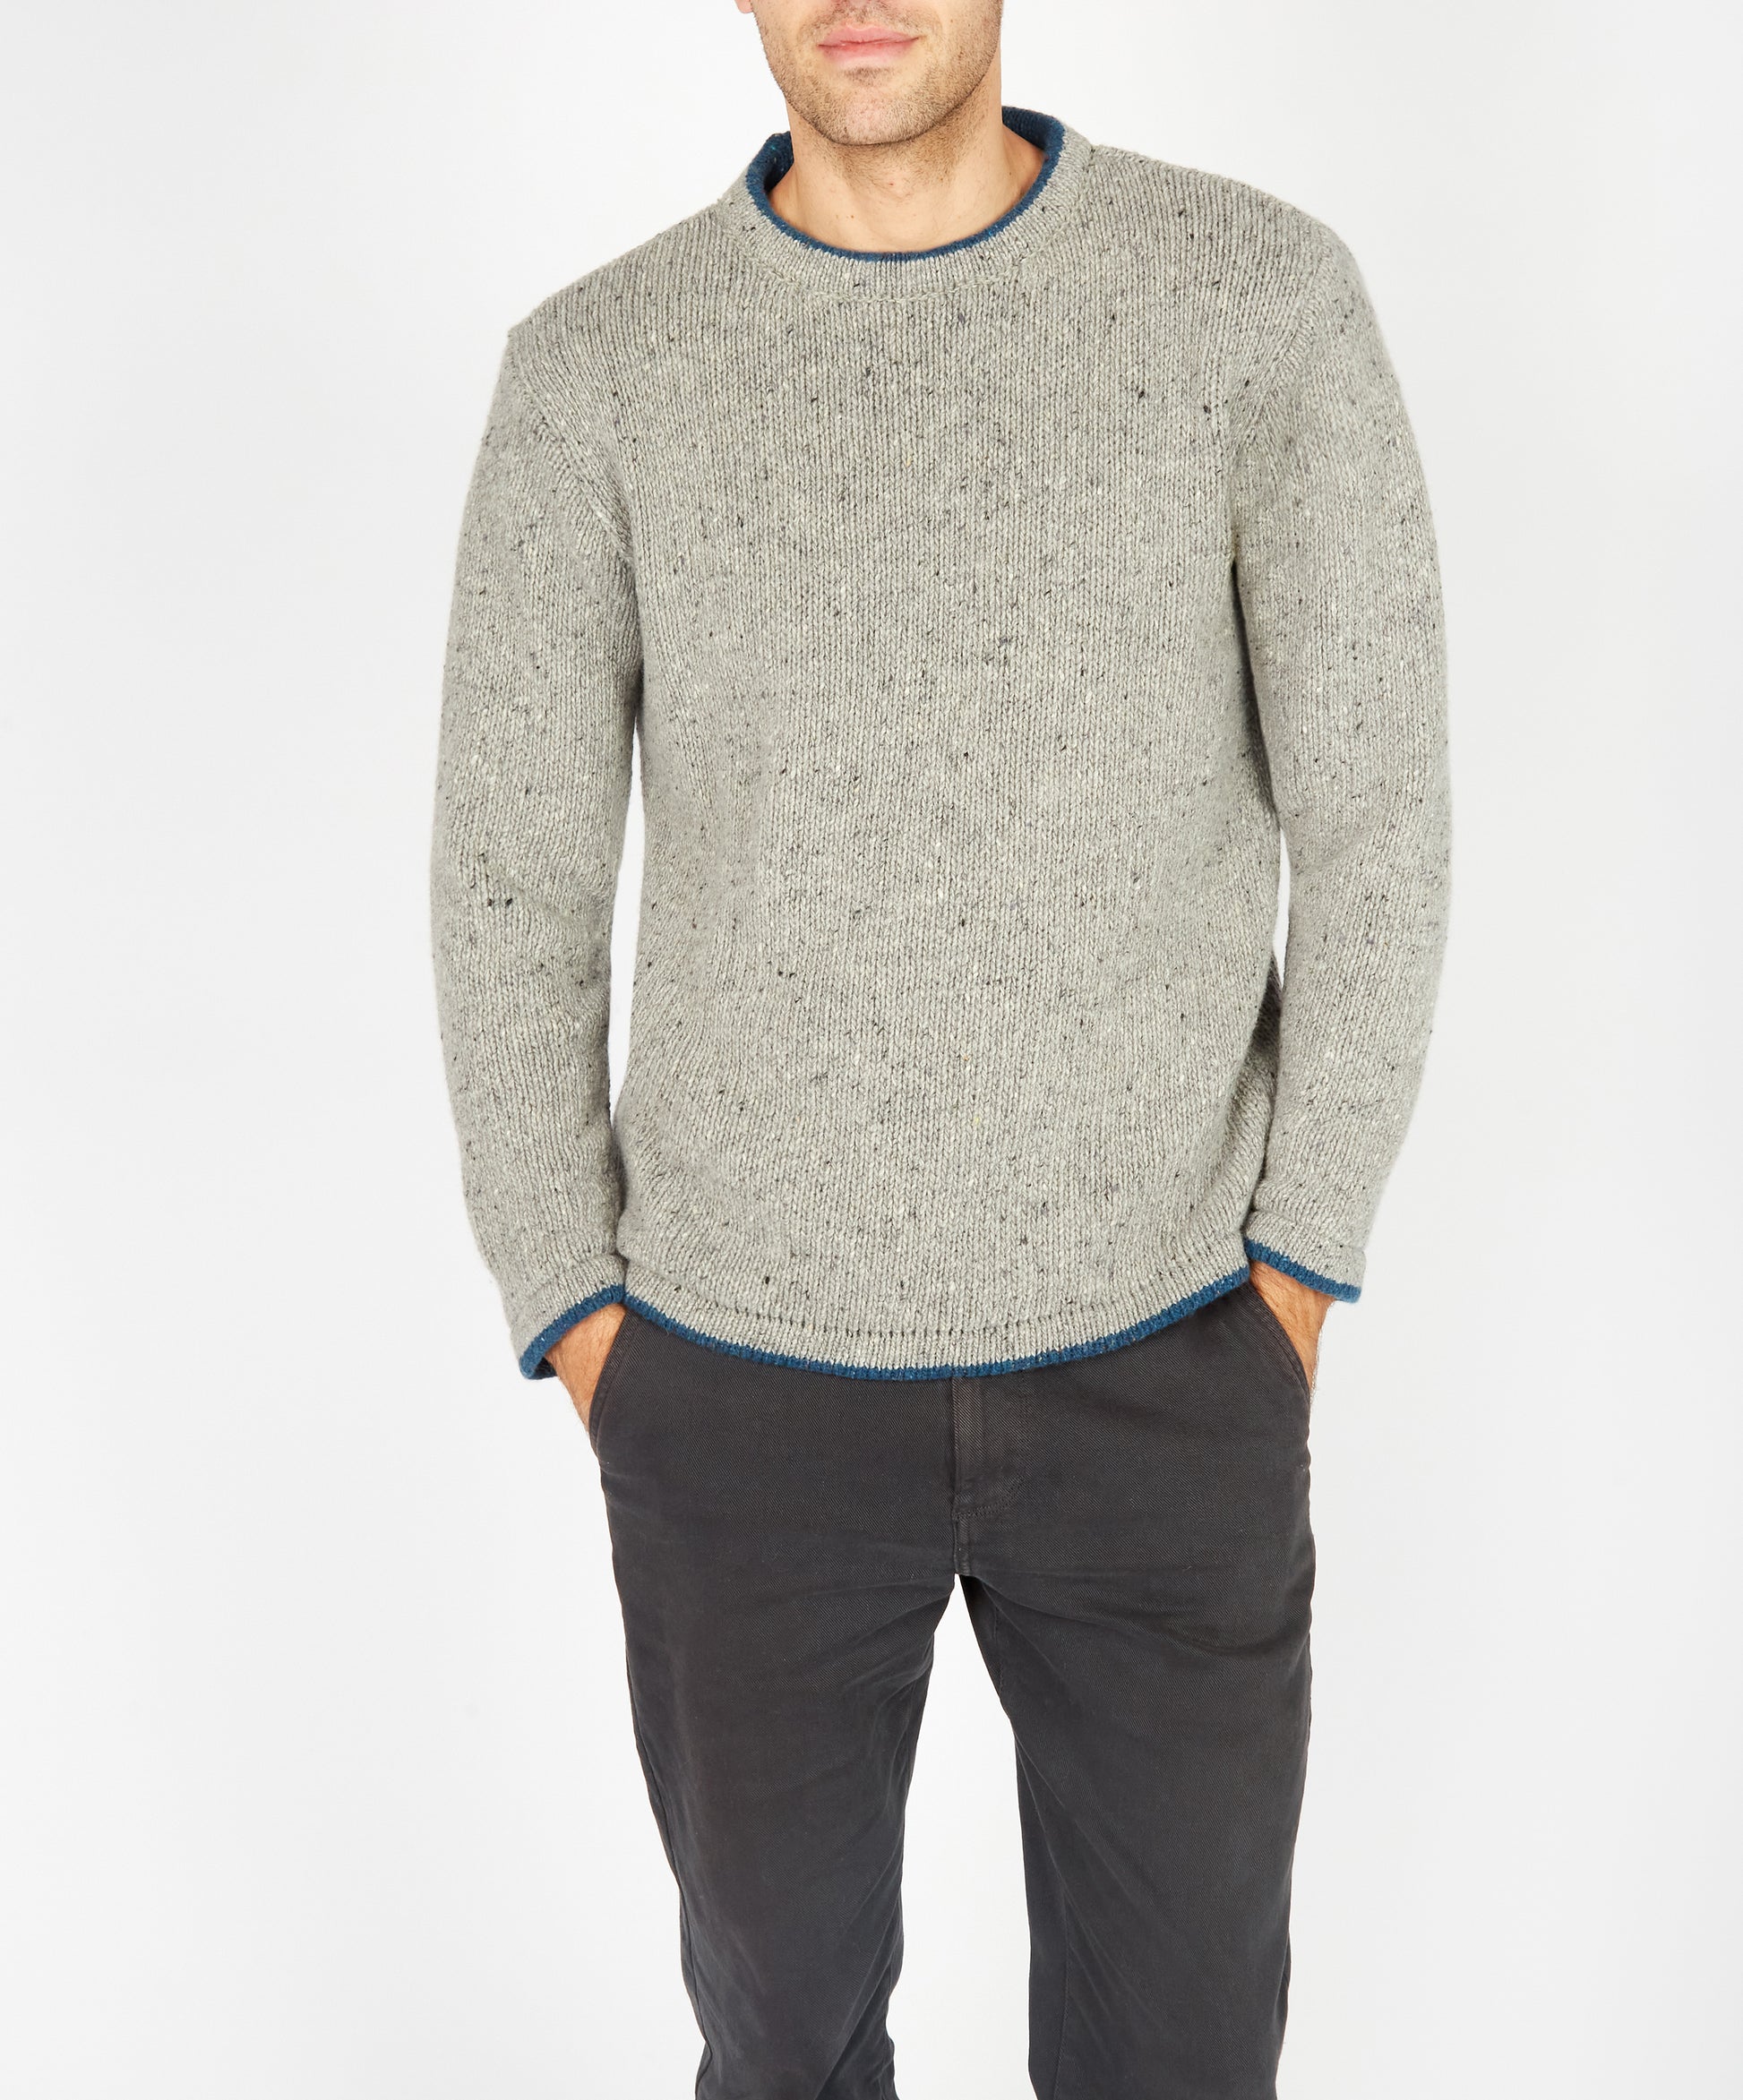 IrelandsEye Knitwear Roundstone Sweater Light Grey